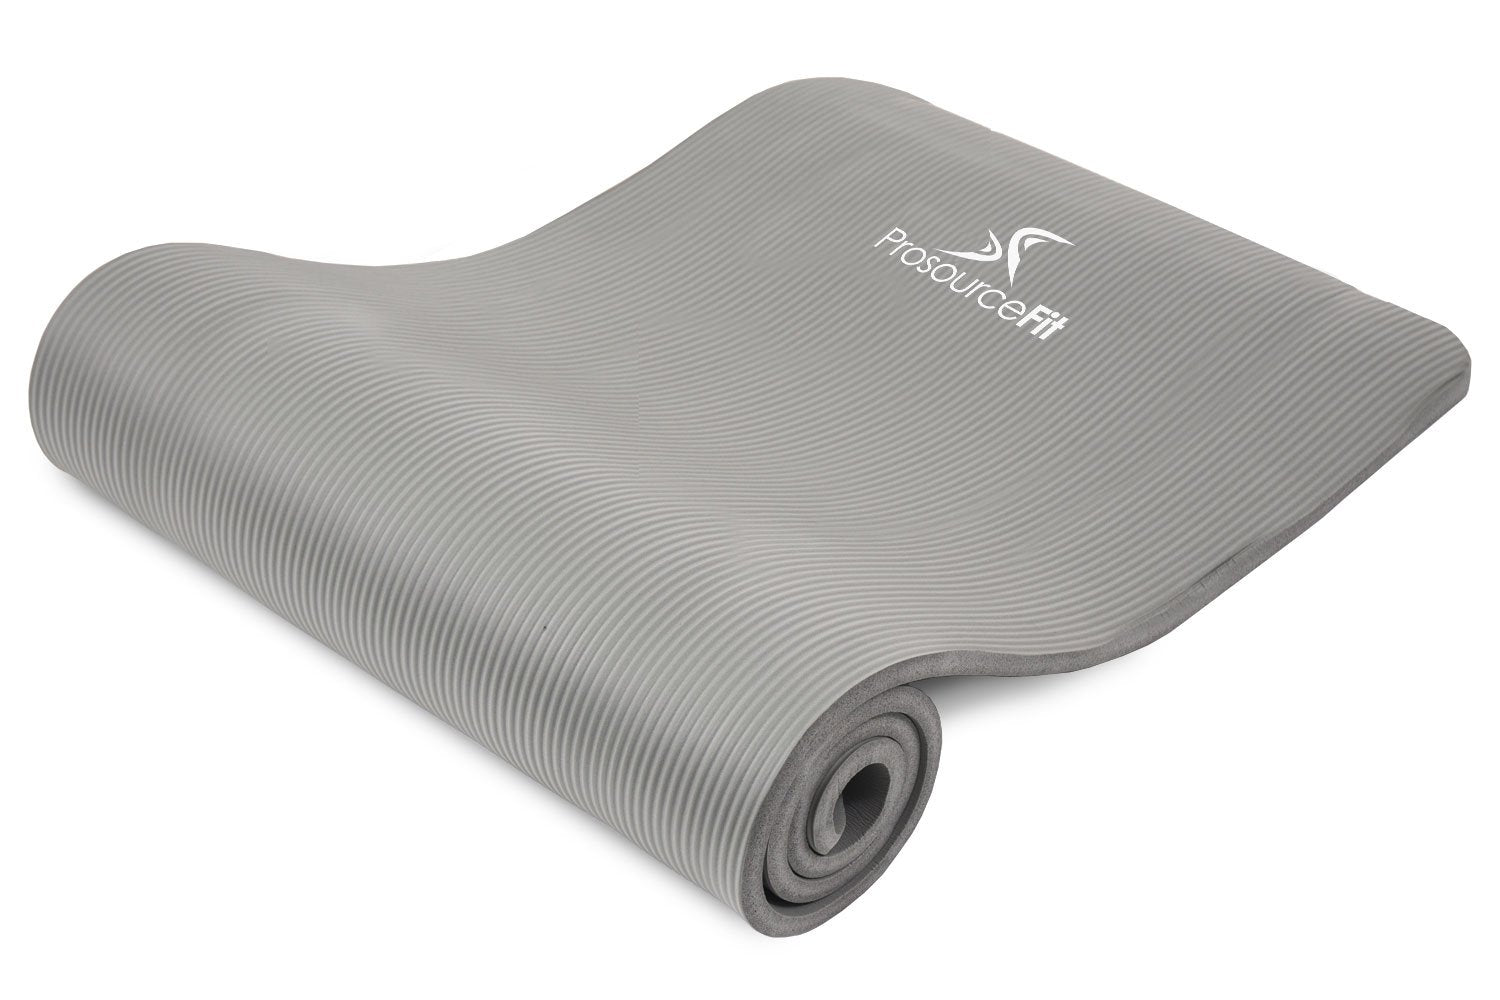  YOGATI – Yoga Mat. Thick Yoga Mat for Pilates, Yoga